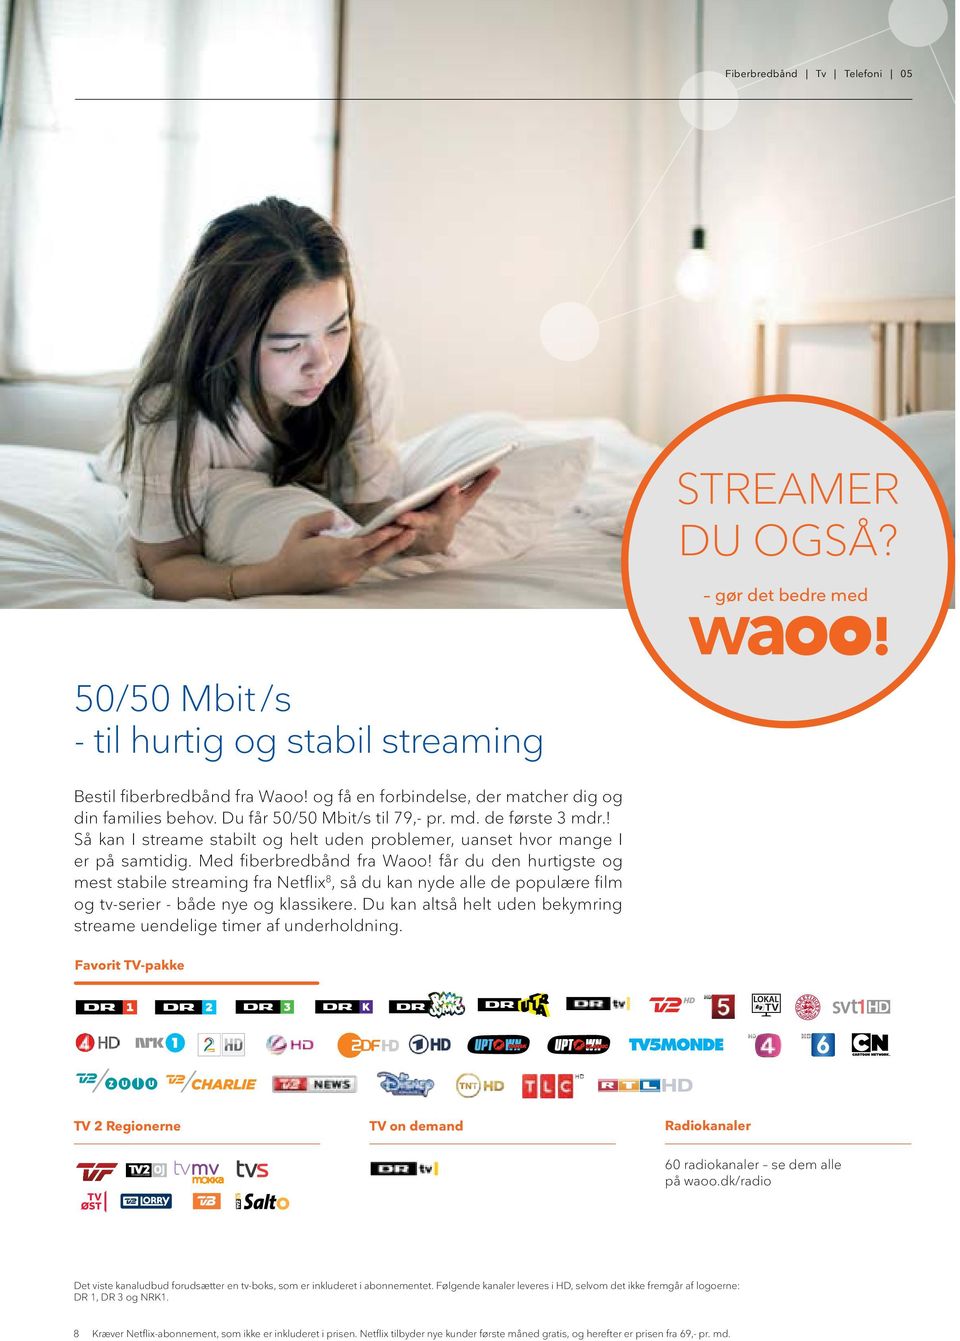 Med fiberbredbånd fra Waoo! får du den hurtigste og mest stabile streaming fra Netflix 8, så du kan nyde alle de populære film og tv-serier - både nye og klassikere.